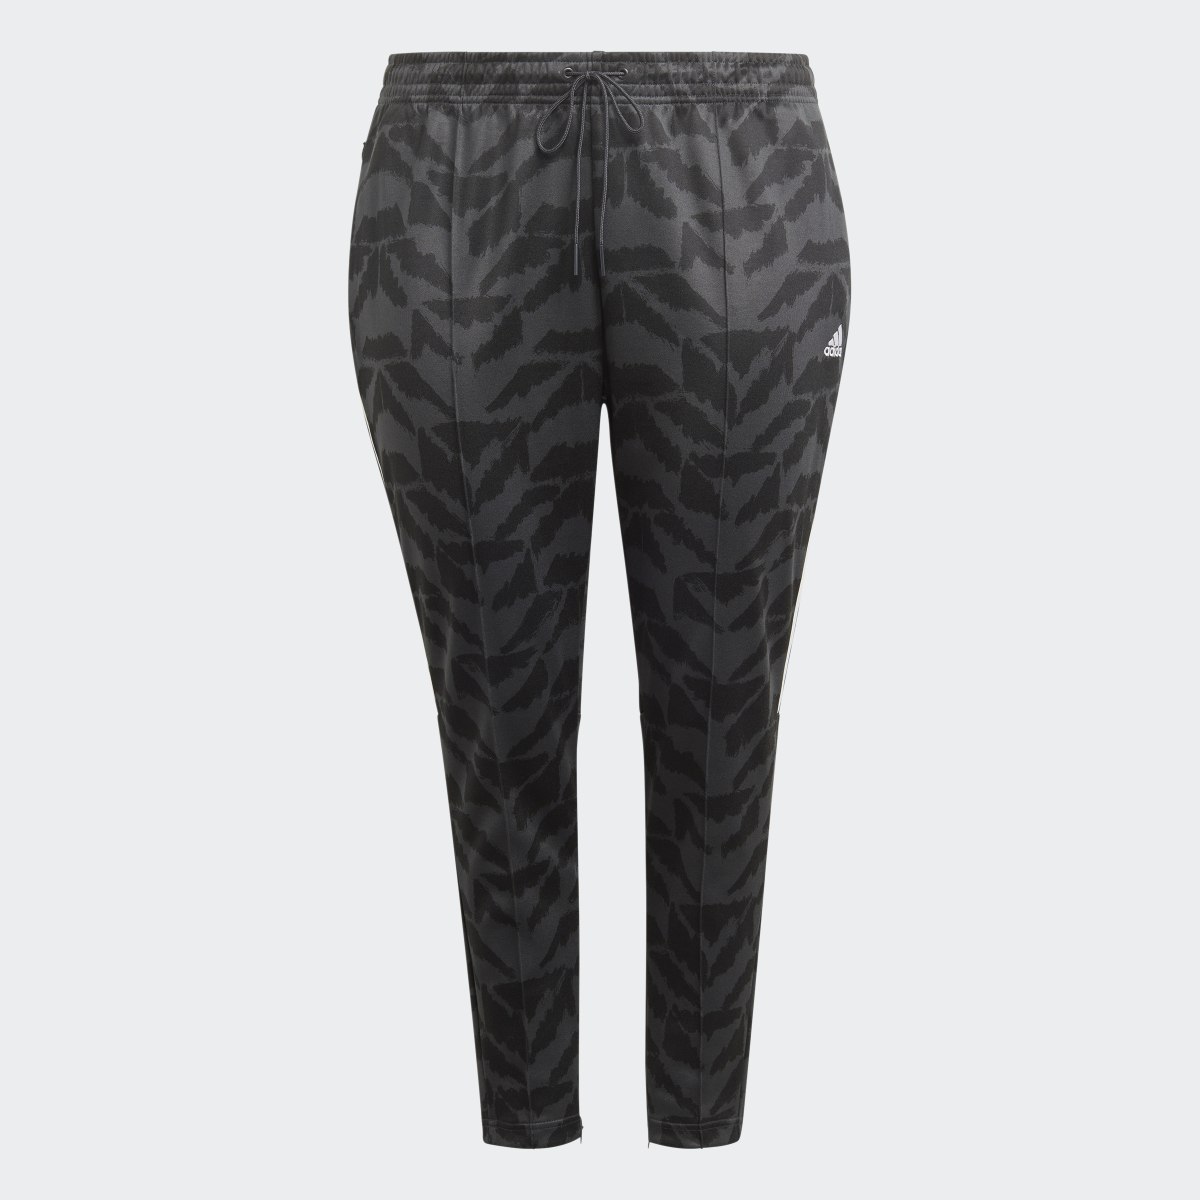 Adidas Tiro Suit Up Lifestyle Track Pant (Plus Size). 4